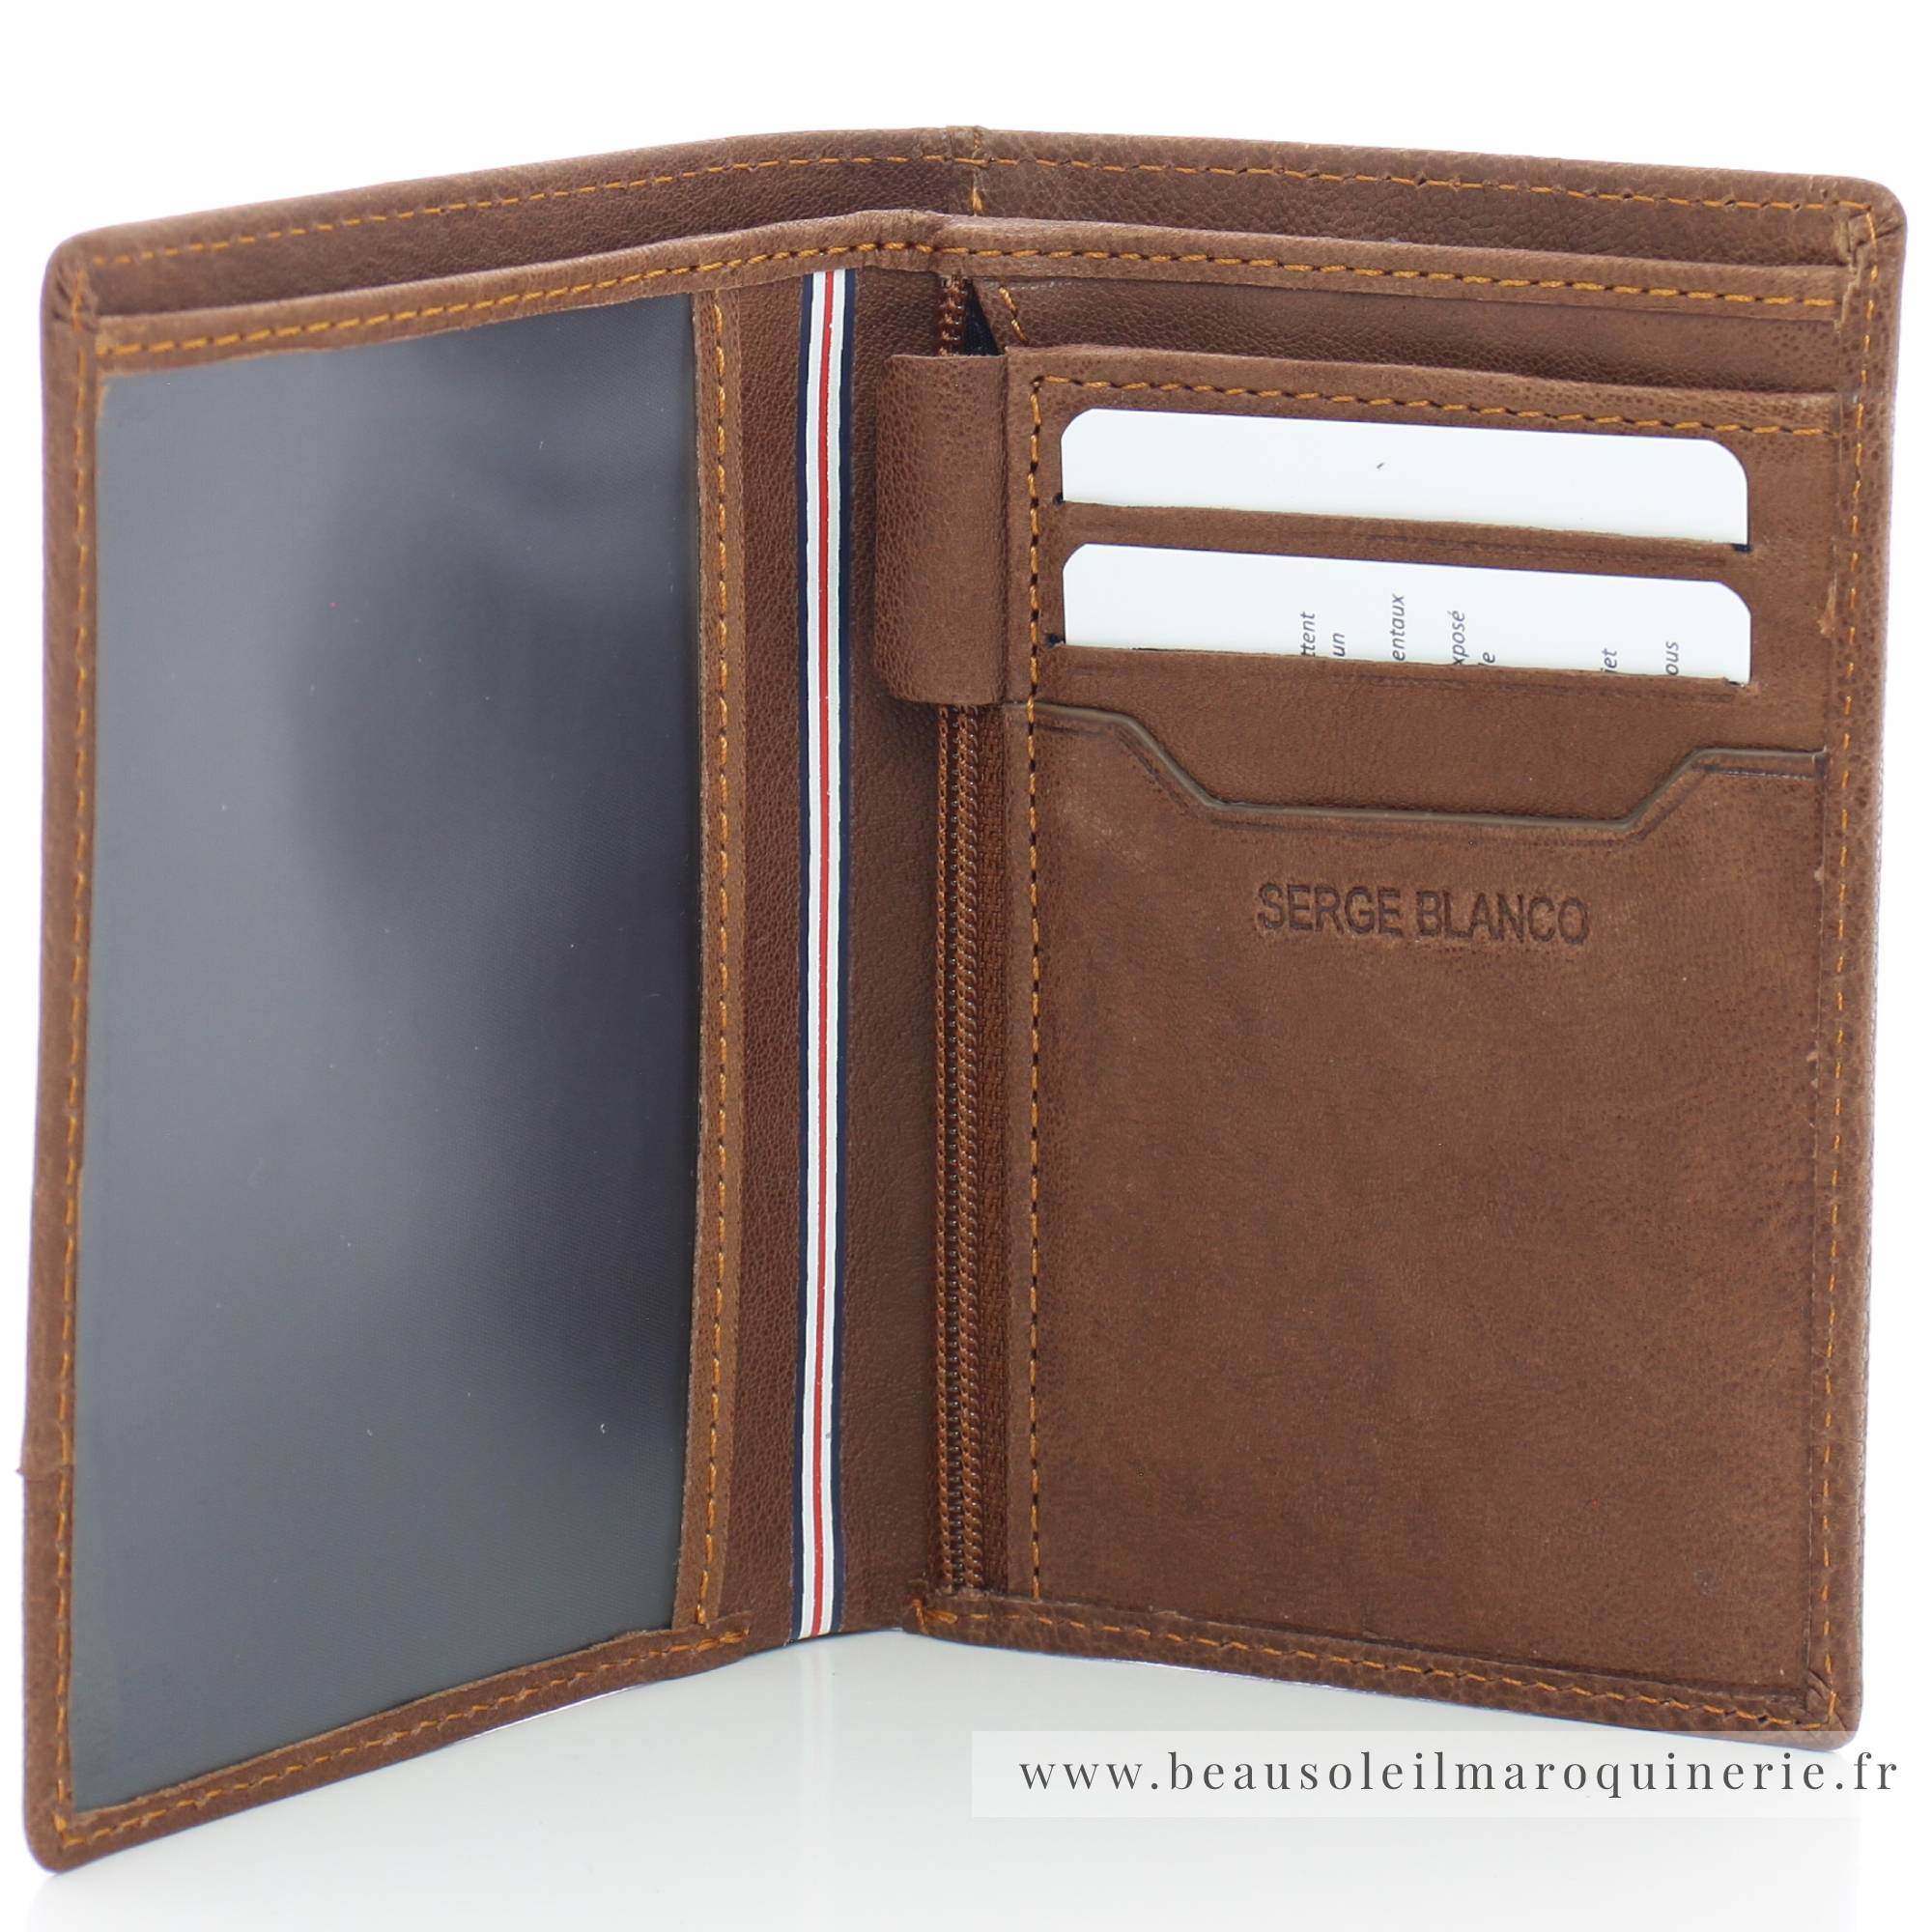 Portefeuille porte-cartes Serge Blanco en cuir ligne Anchorage, référence ANC21052 149 Cognac ouvert